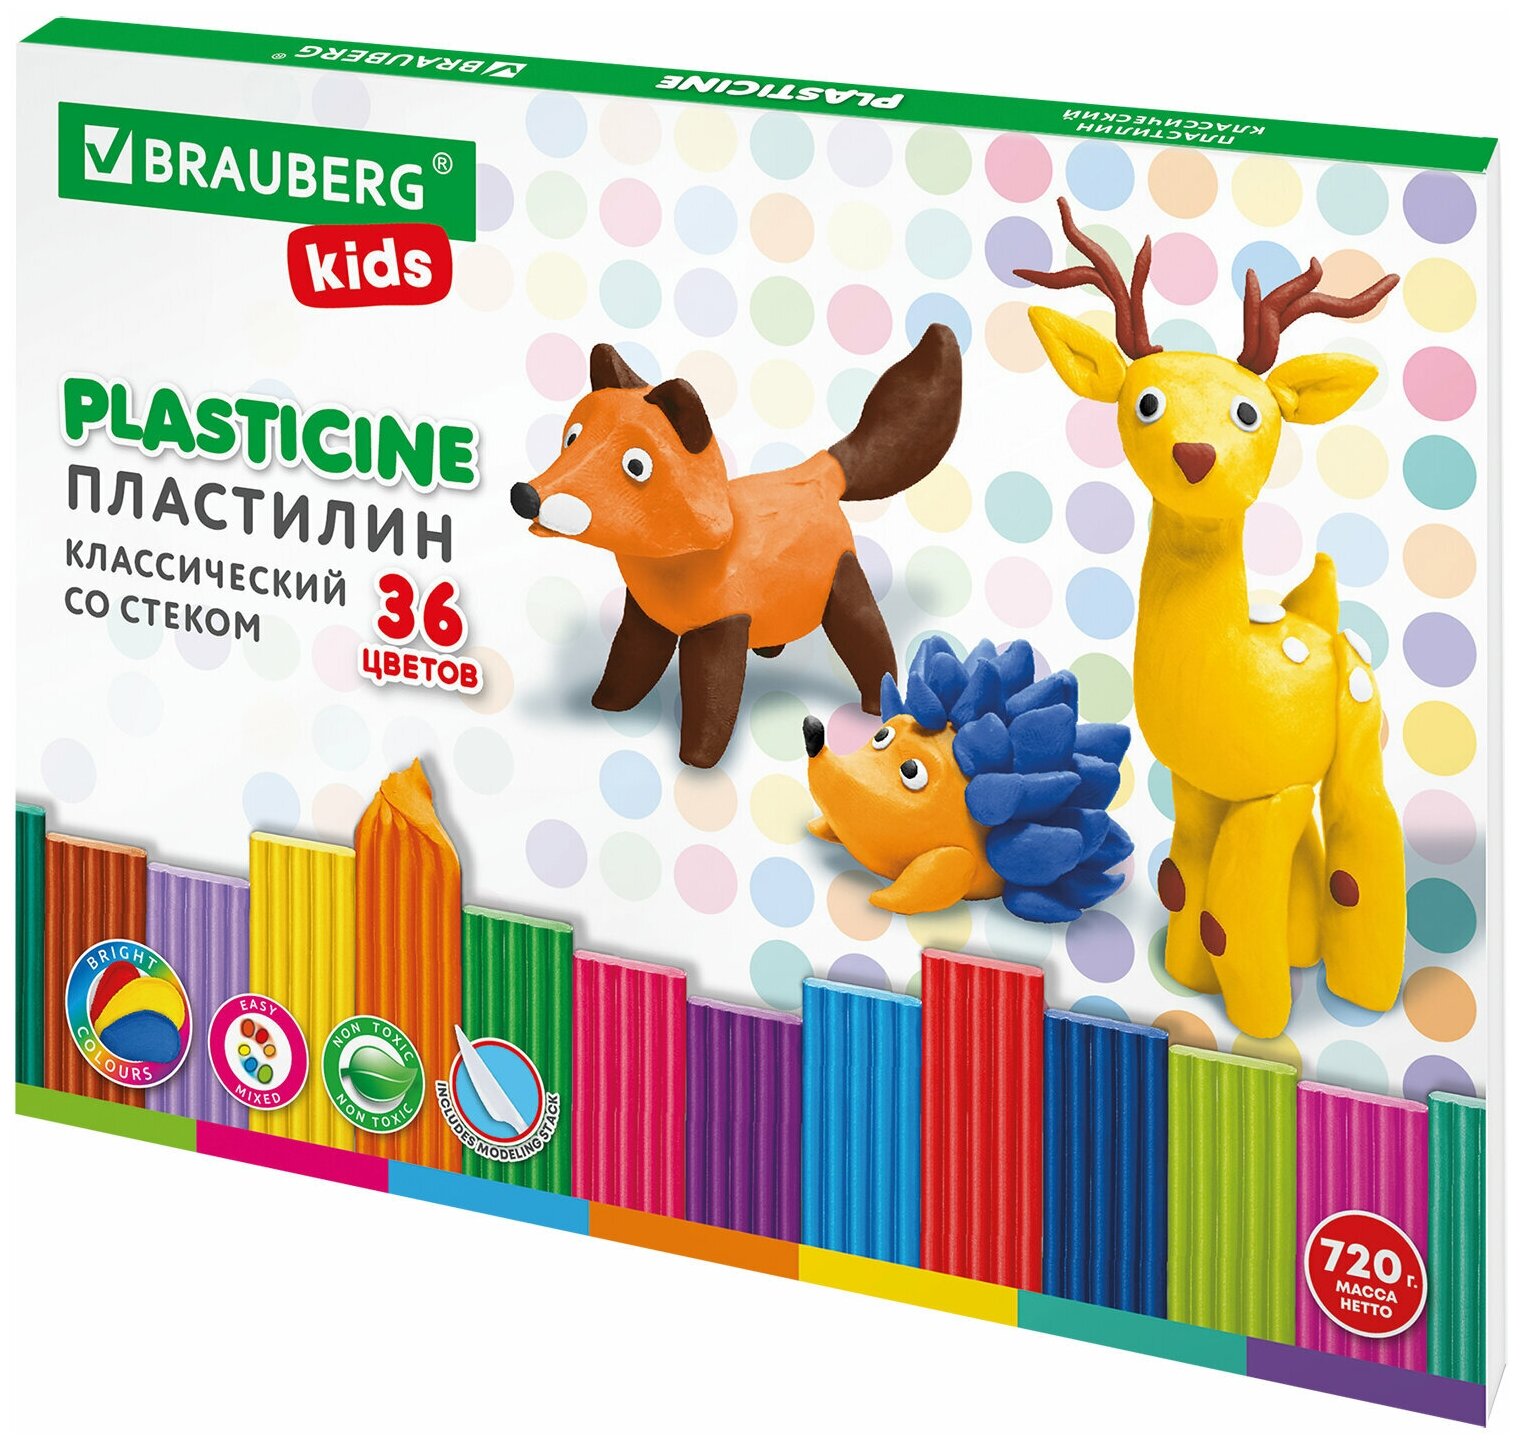 Пластилин классический для лепки (набор) для детей Brauberg Kids 36 цветов 720 г стек 106438